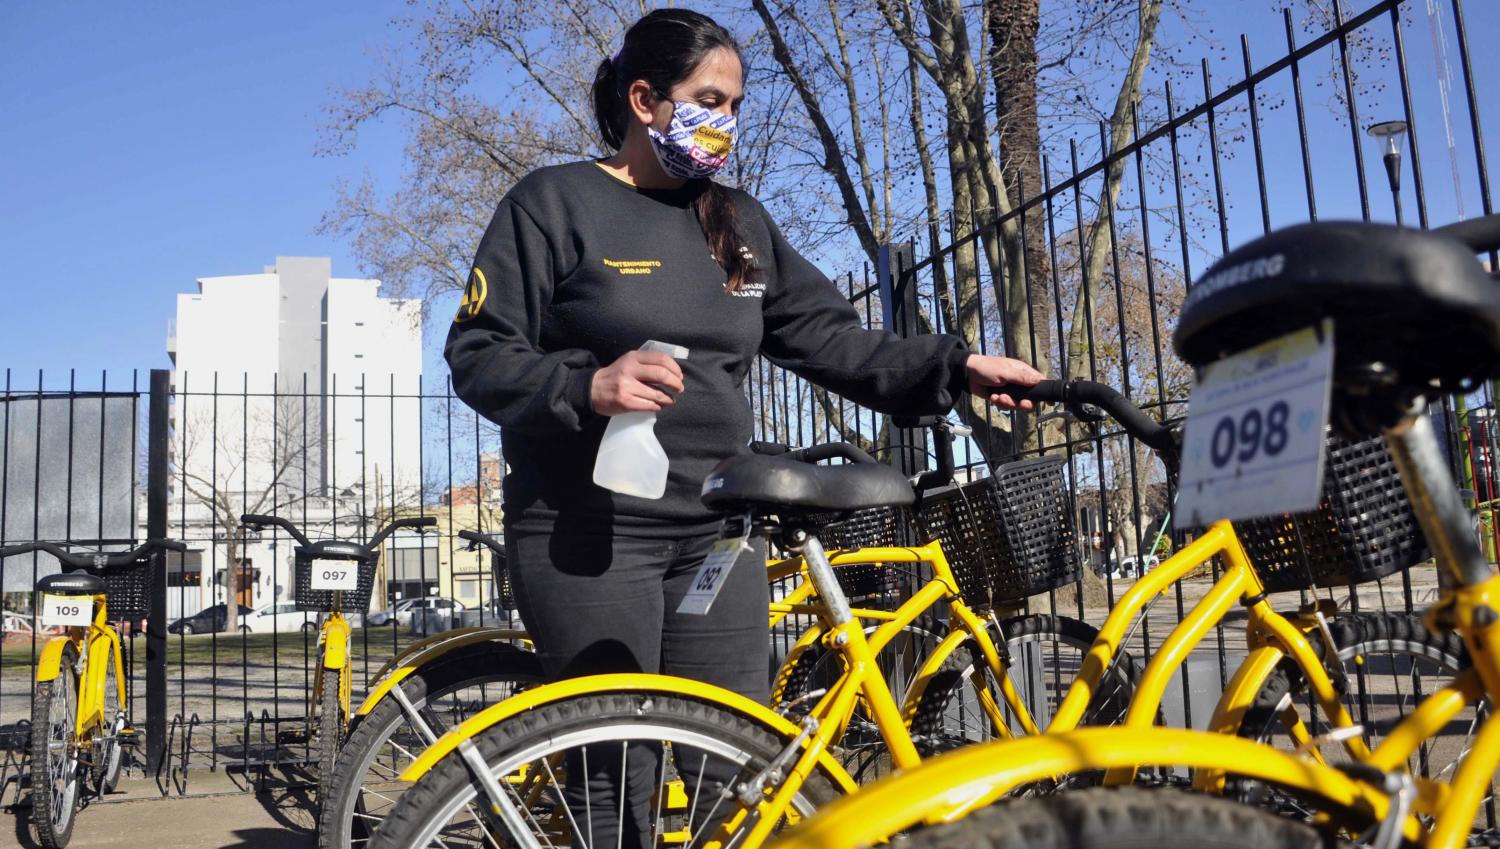 DESINFECCIÓN. En La Plata, cada bicicleta de las que se prestan a los usuarios es rociada con una solución de alcohol al 70% en los puntos de contacto. Además, se le exige al usuario el uso del barbijo.